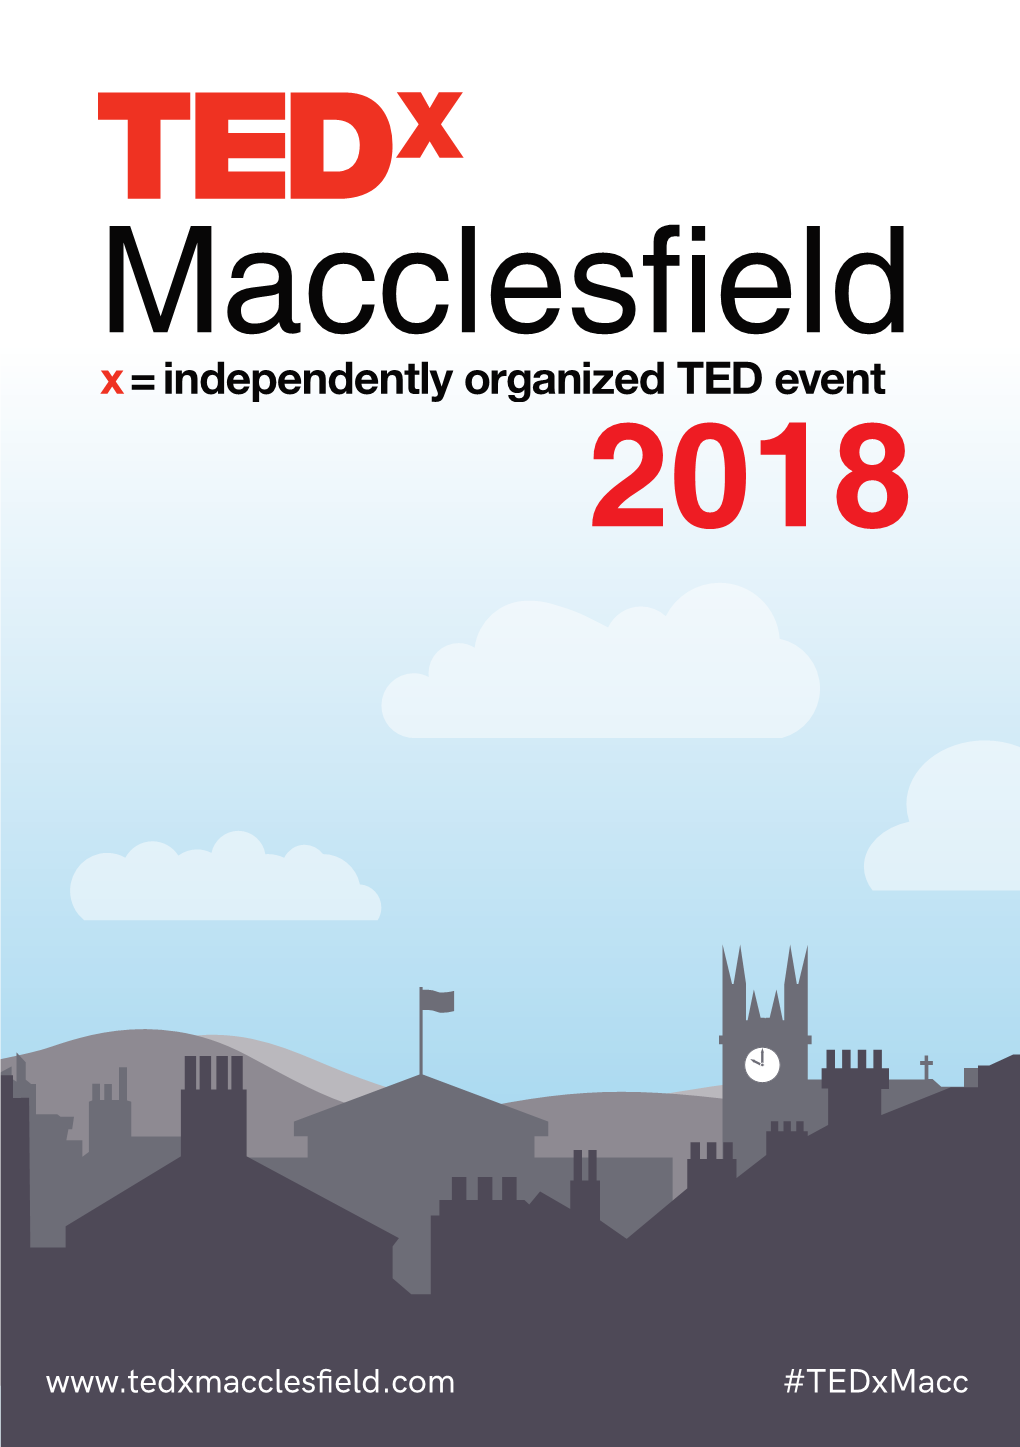 Tedx Macclesfield